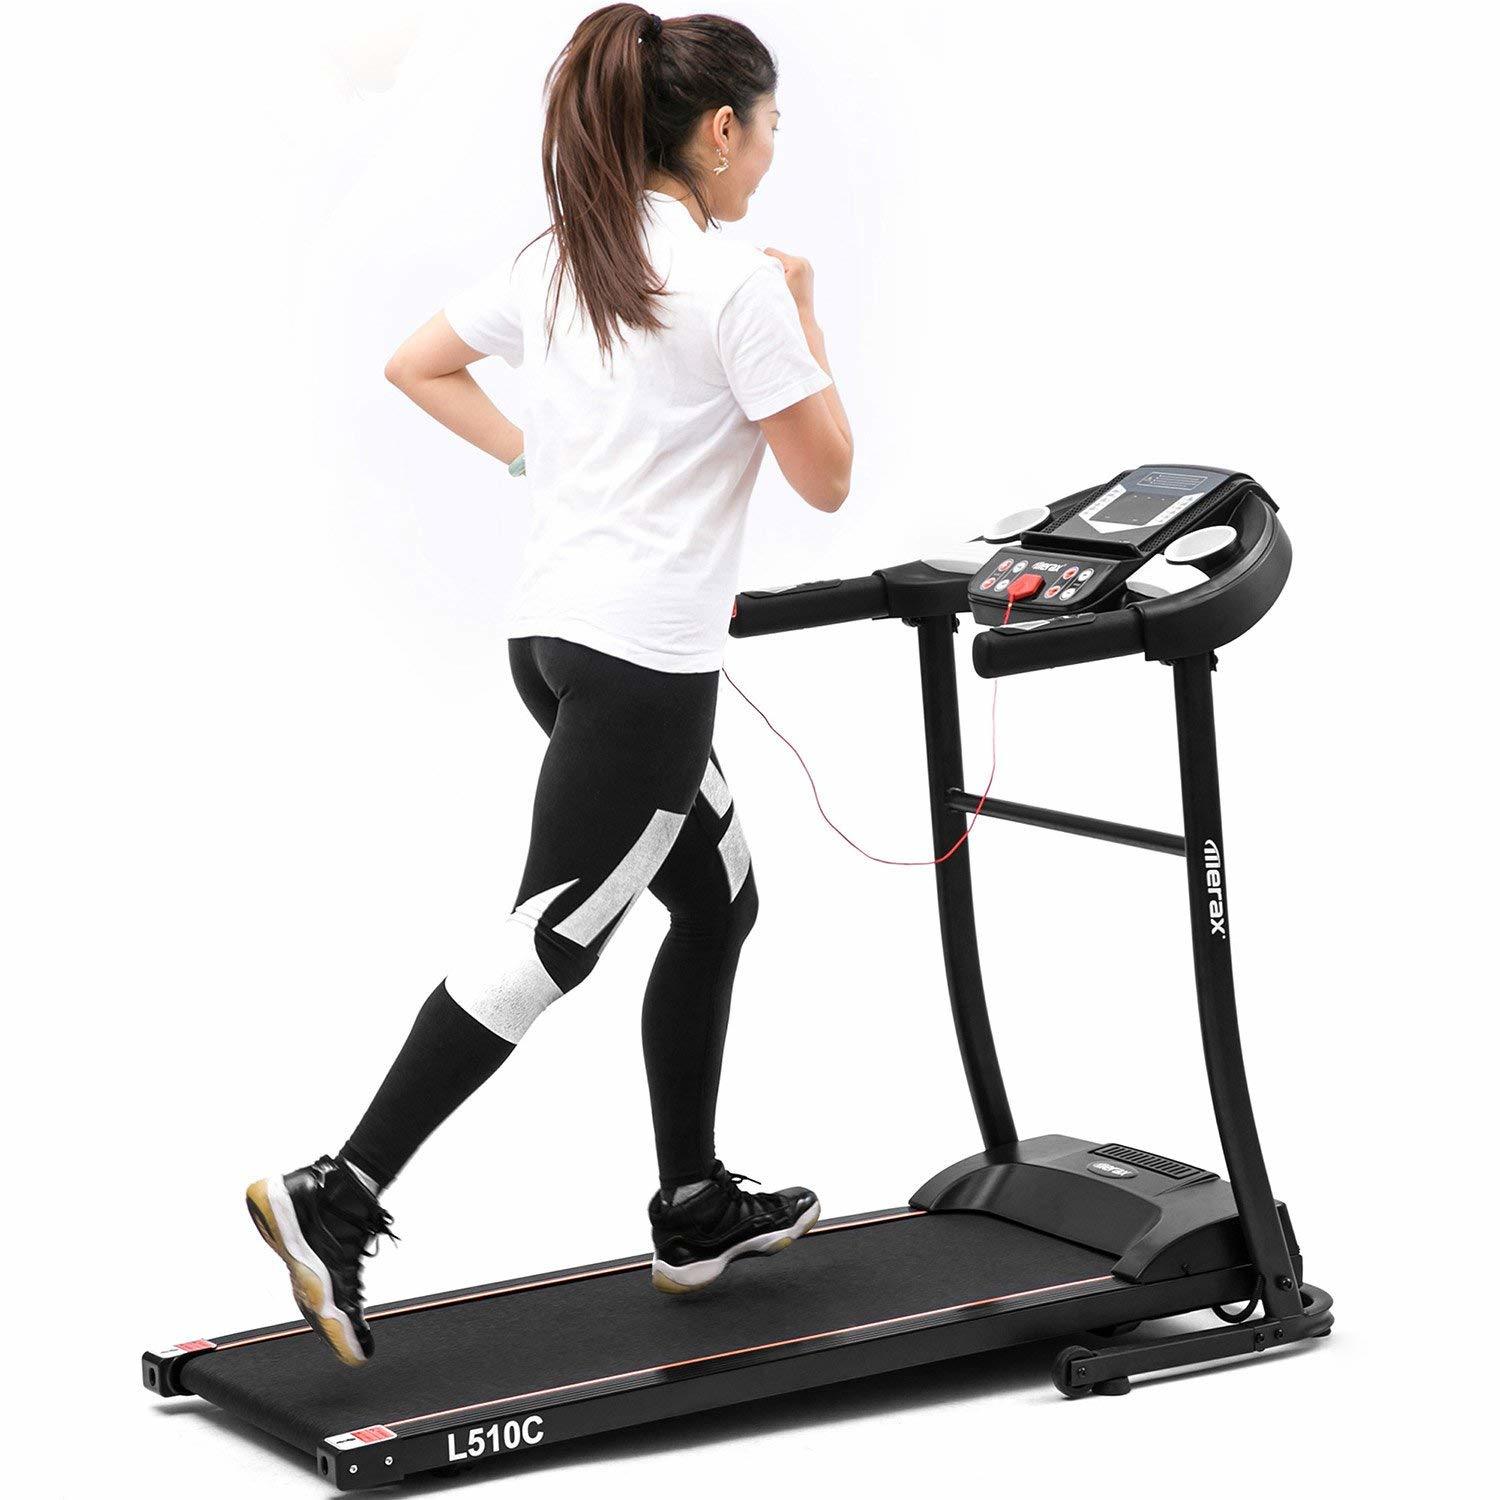 10 best treadmills under $500 & $1000 for home gym 10